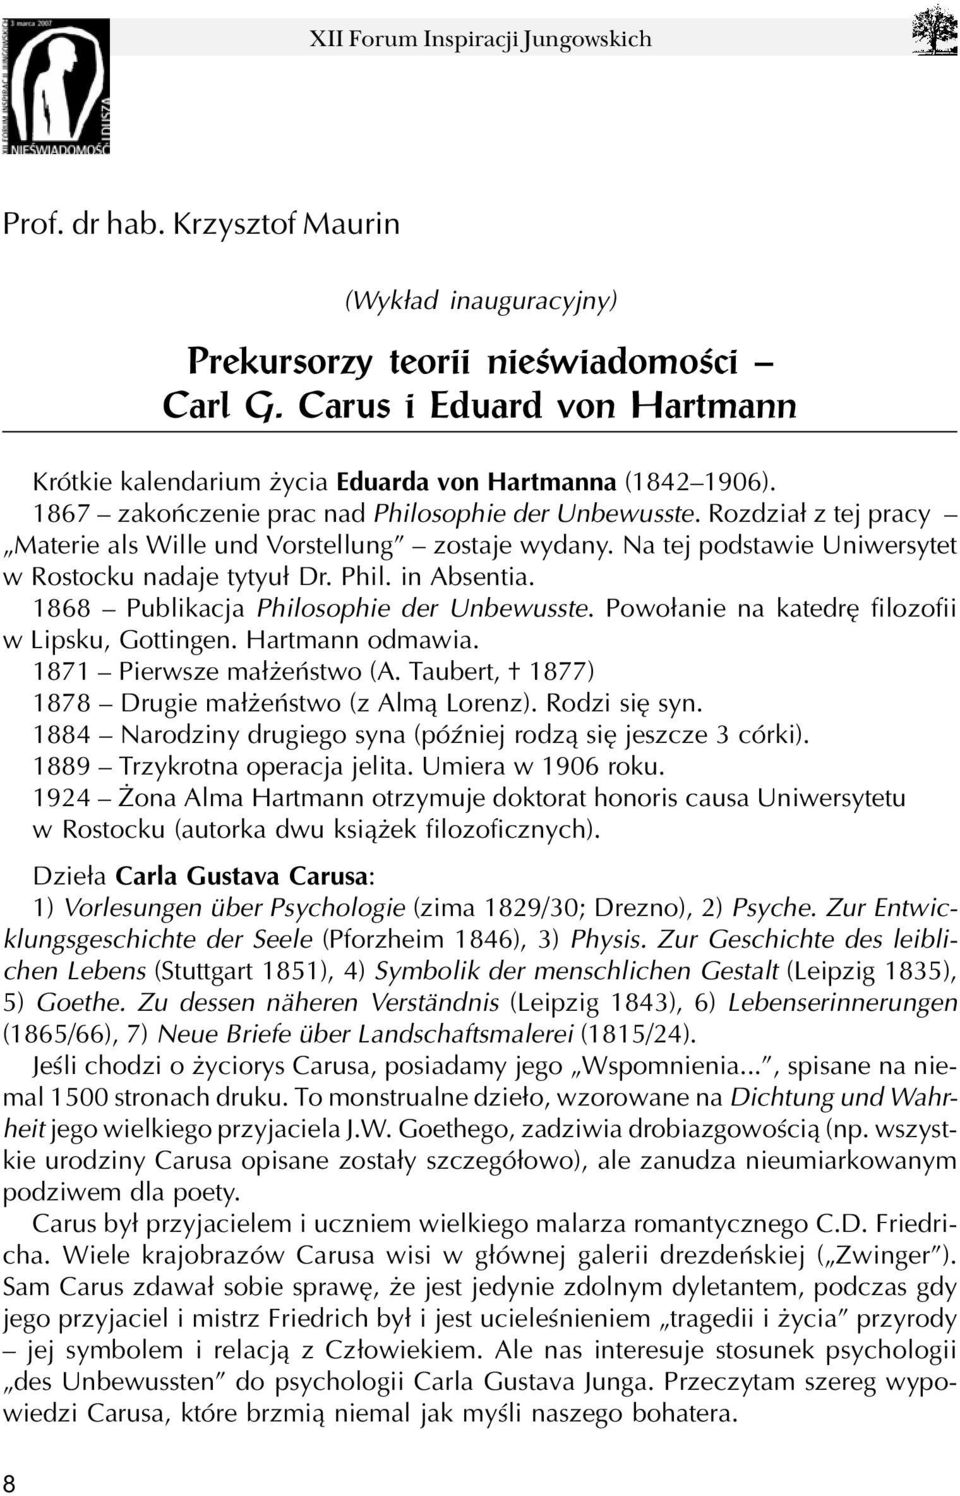 1868 Publikacja Philosophie der Unbewusste. Powo³anie na katedrê filozofii w Lipsku, Gottingen. Hartmann odmawia. 1871 Pierwsze ma³ eñstwo (A. Taubert, 1877) 1878 Drugie ma³ eñstwo (z Alm¹ Lorenz).